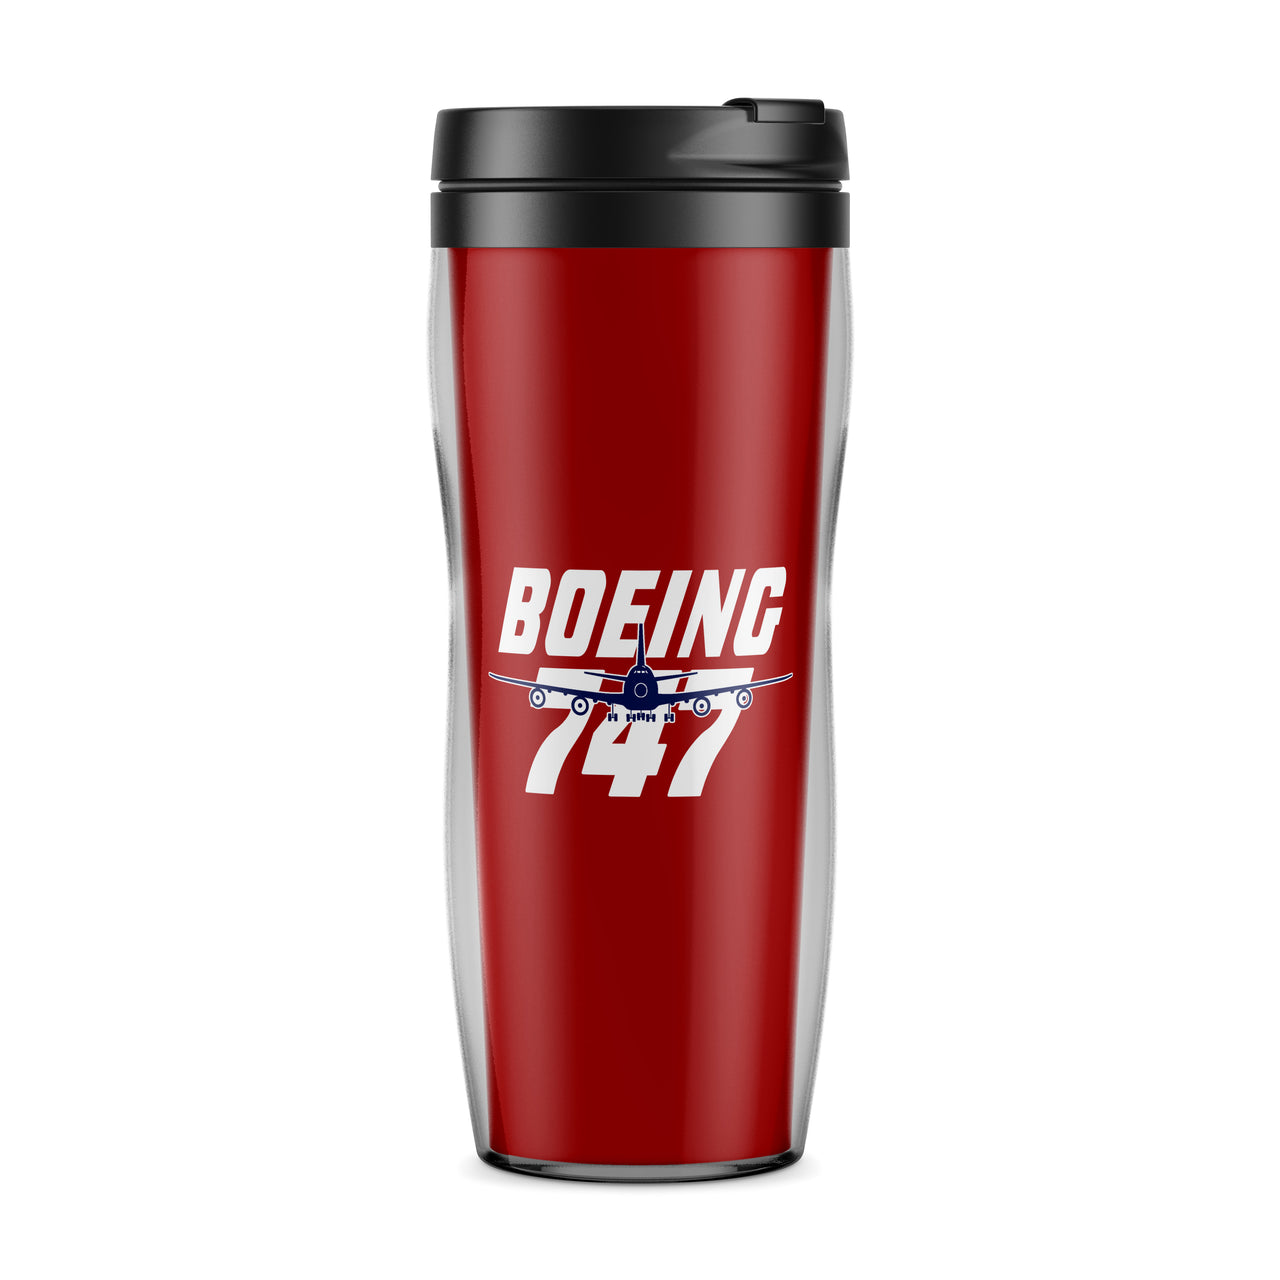 Amazing Boeing 747 Designed Travel Mugs